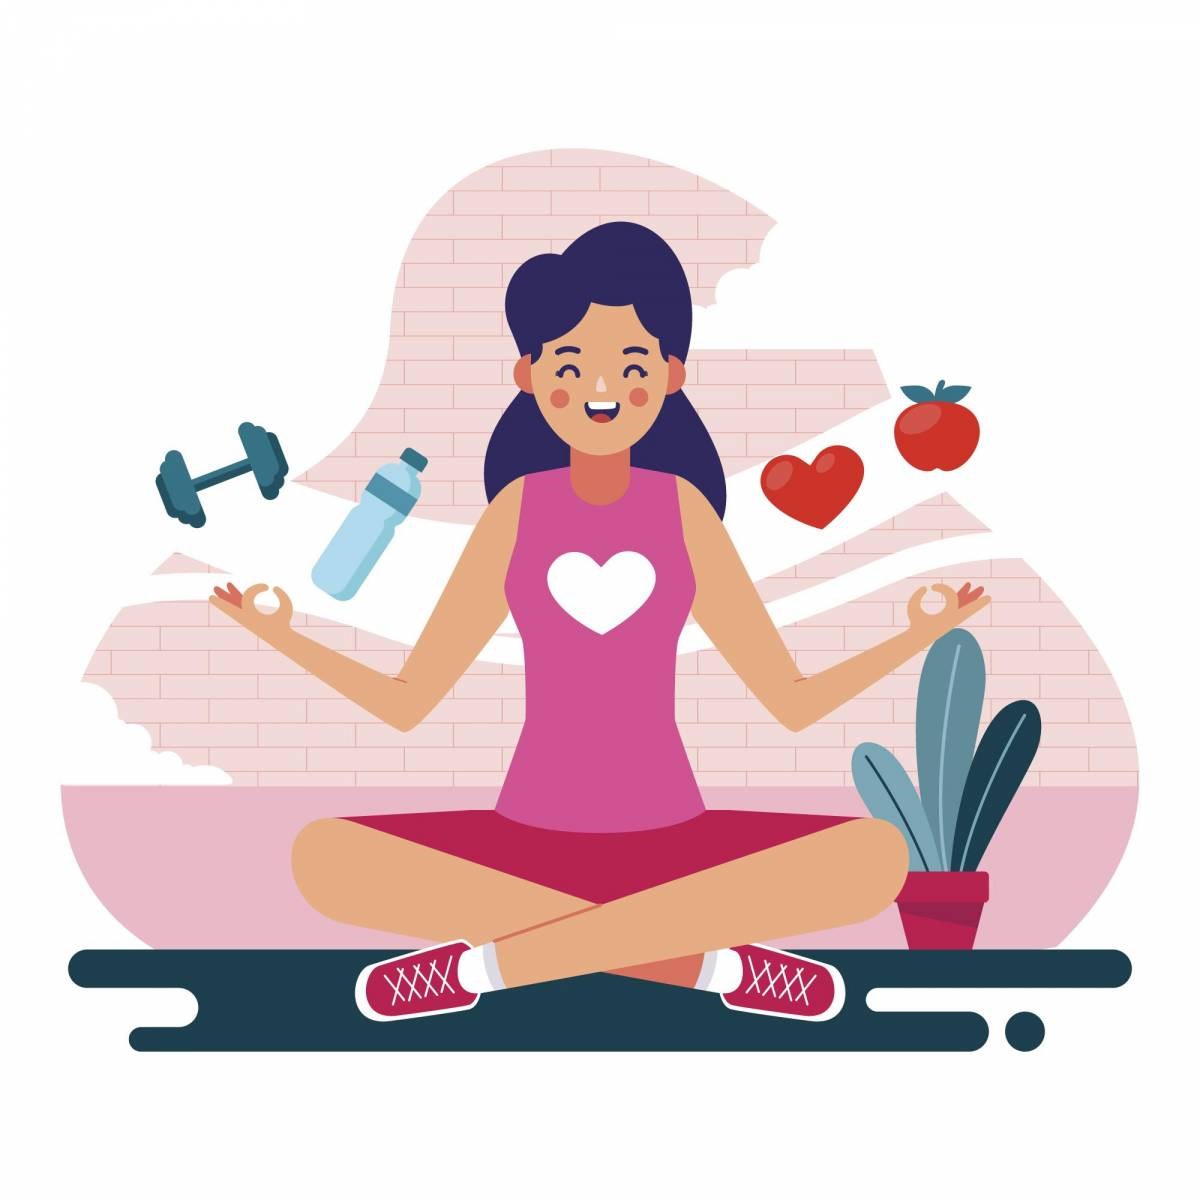 Dibujo de mujer sentada en suelo con camisa de manga corta y corazón en el centro. Imágenes de mancuerna, agua, frutas.